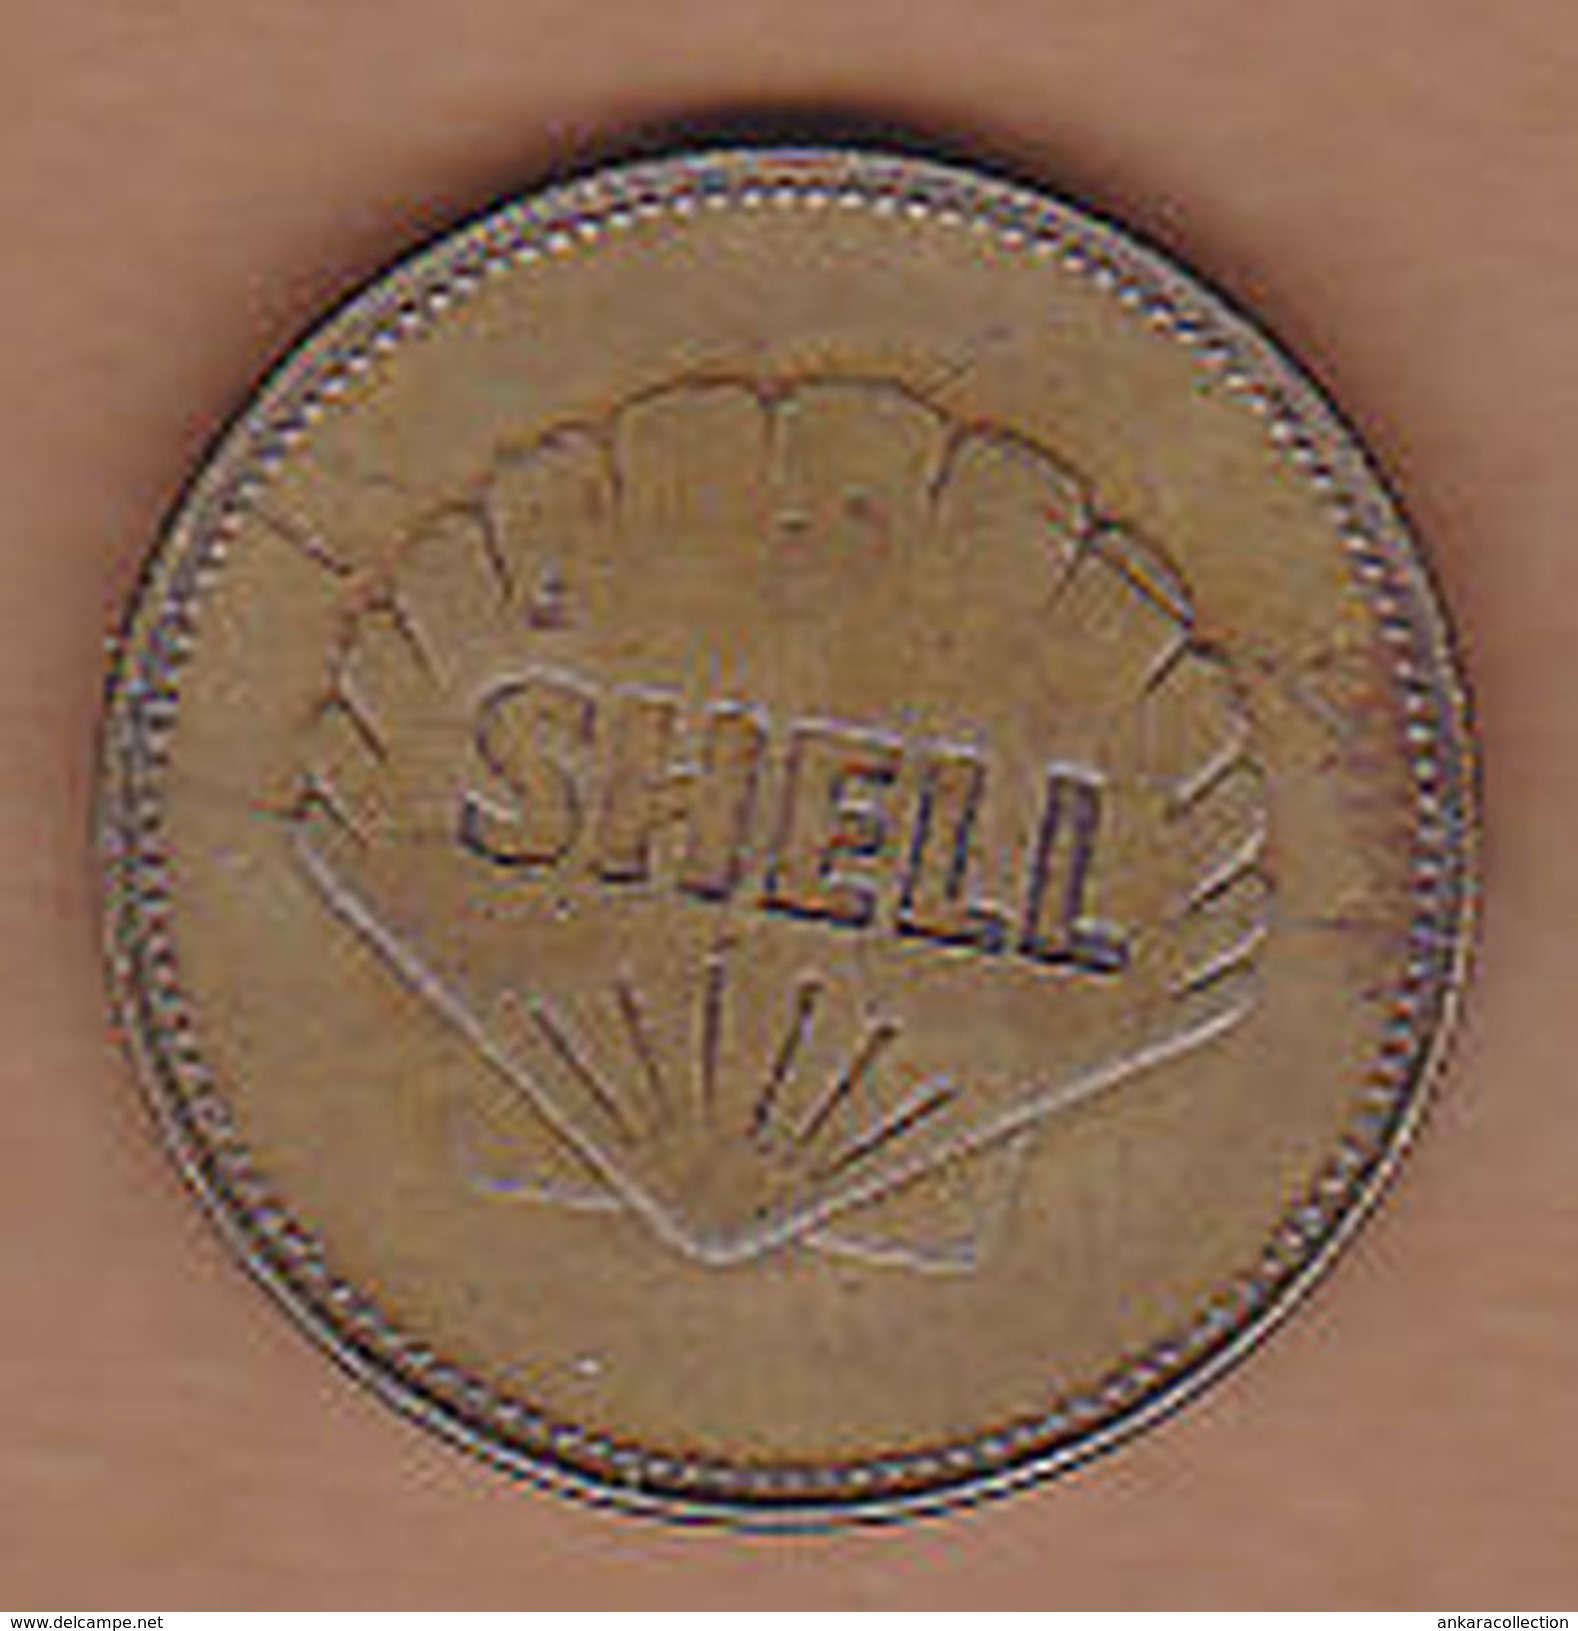 AC - YURI GAGARIN VOSTOK 1 1961 SHELL TOKEN - JETON - Monedas / De Necesidad